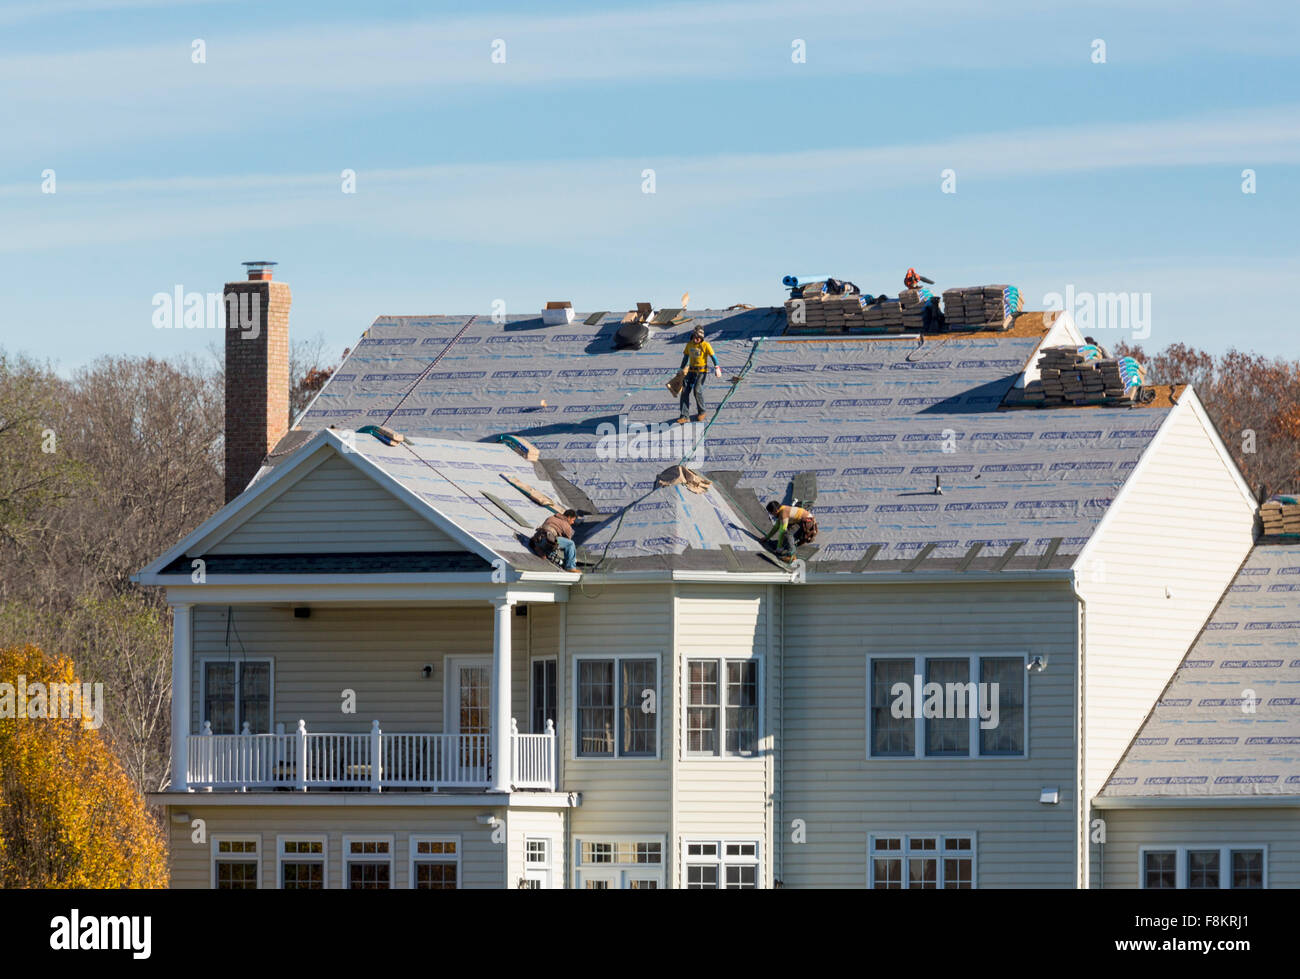 Arbeiter auf einer amerikanischen Hausdach Dach ersetzen fühlte mich bereit, Fliesen auf dem Dach, USA zu ersetzen Stockfoto